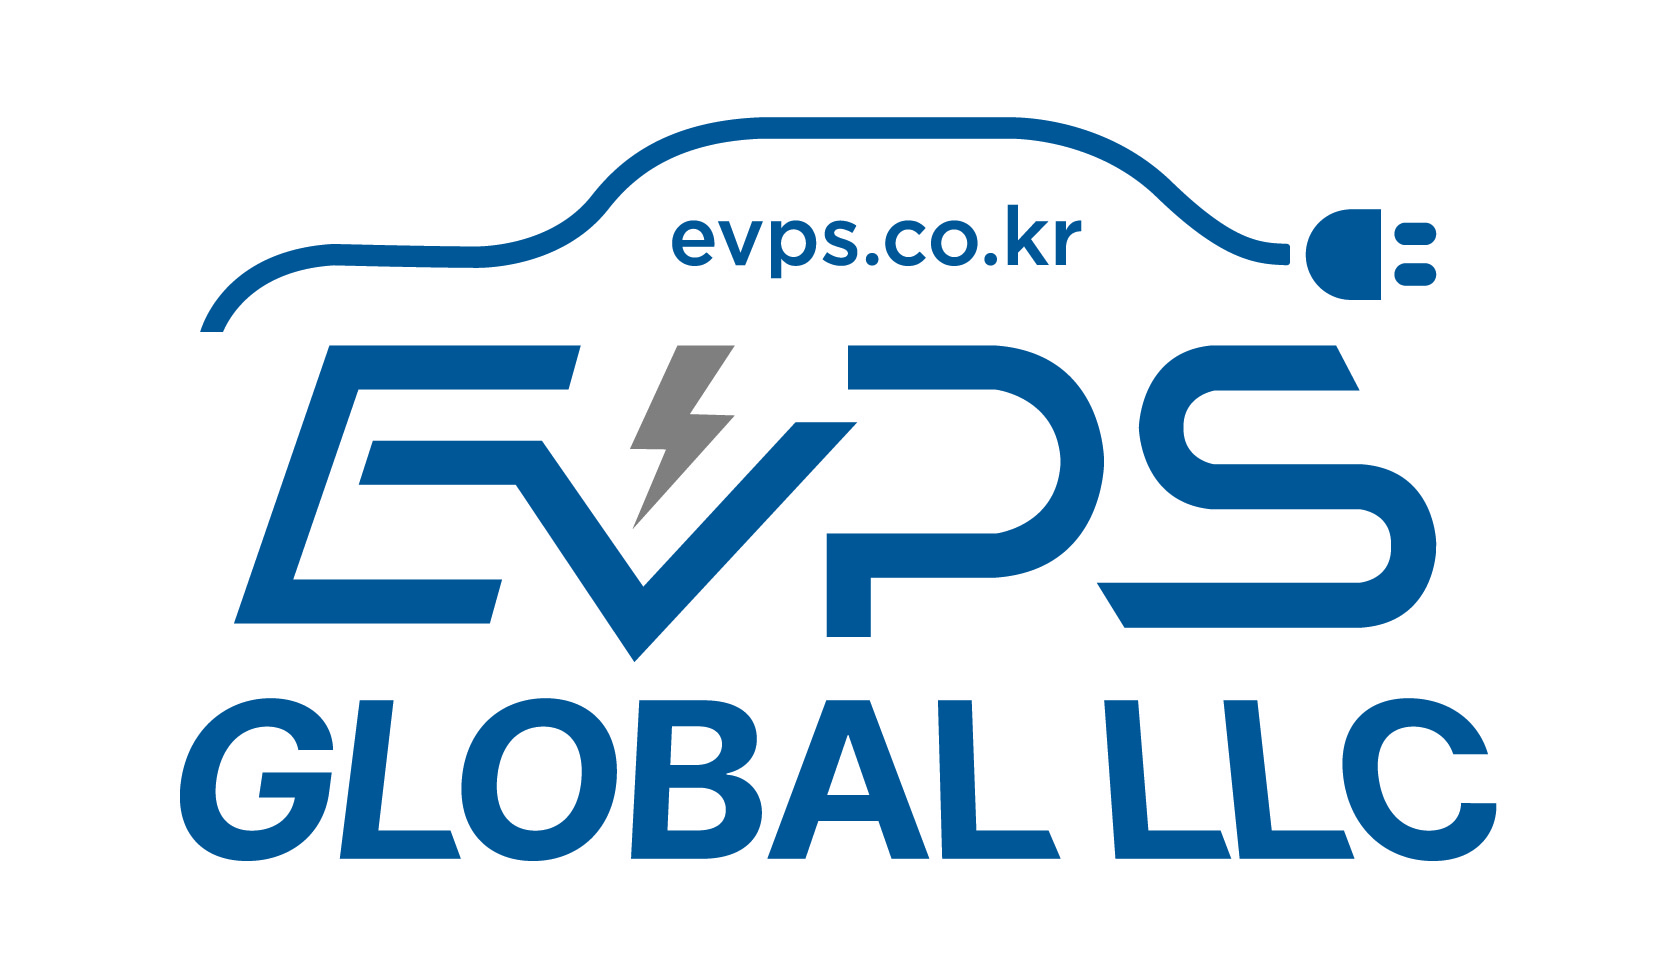 EVPS Global